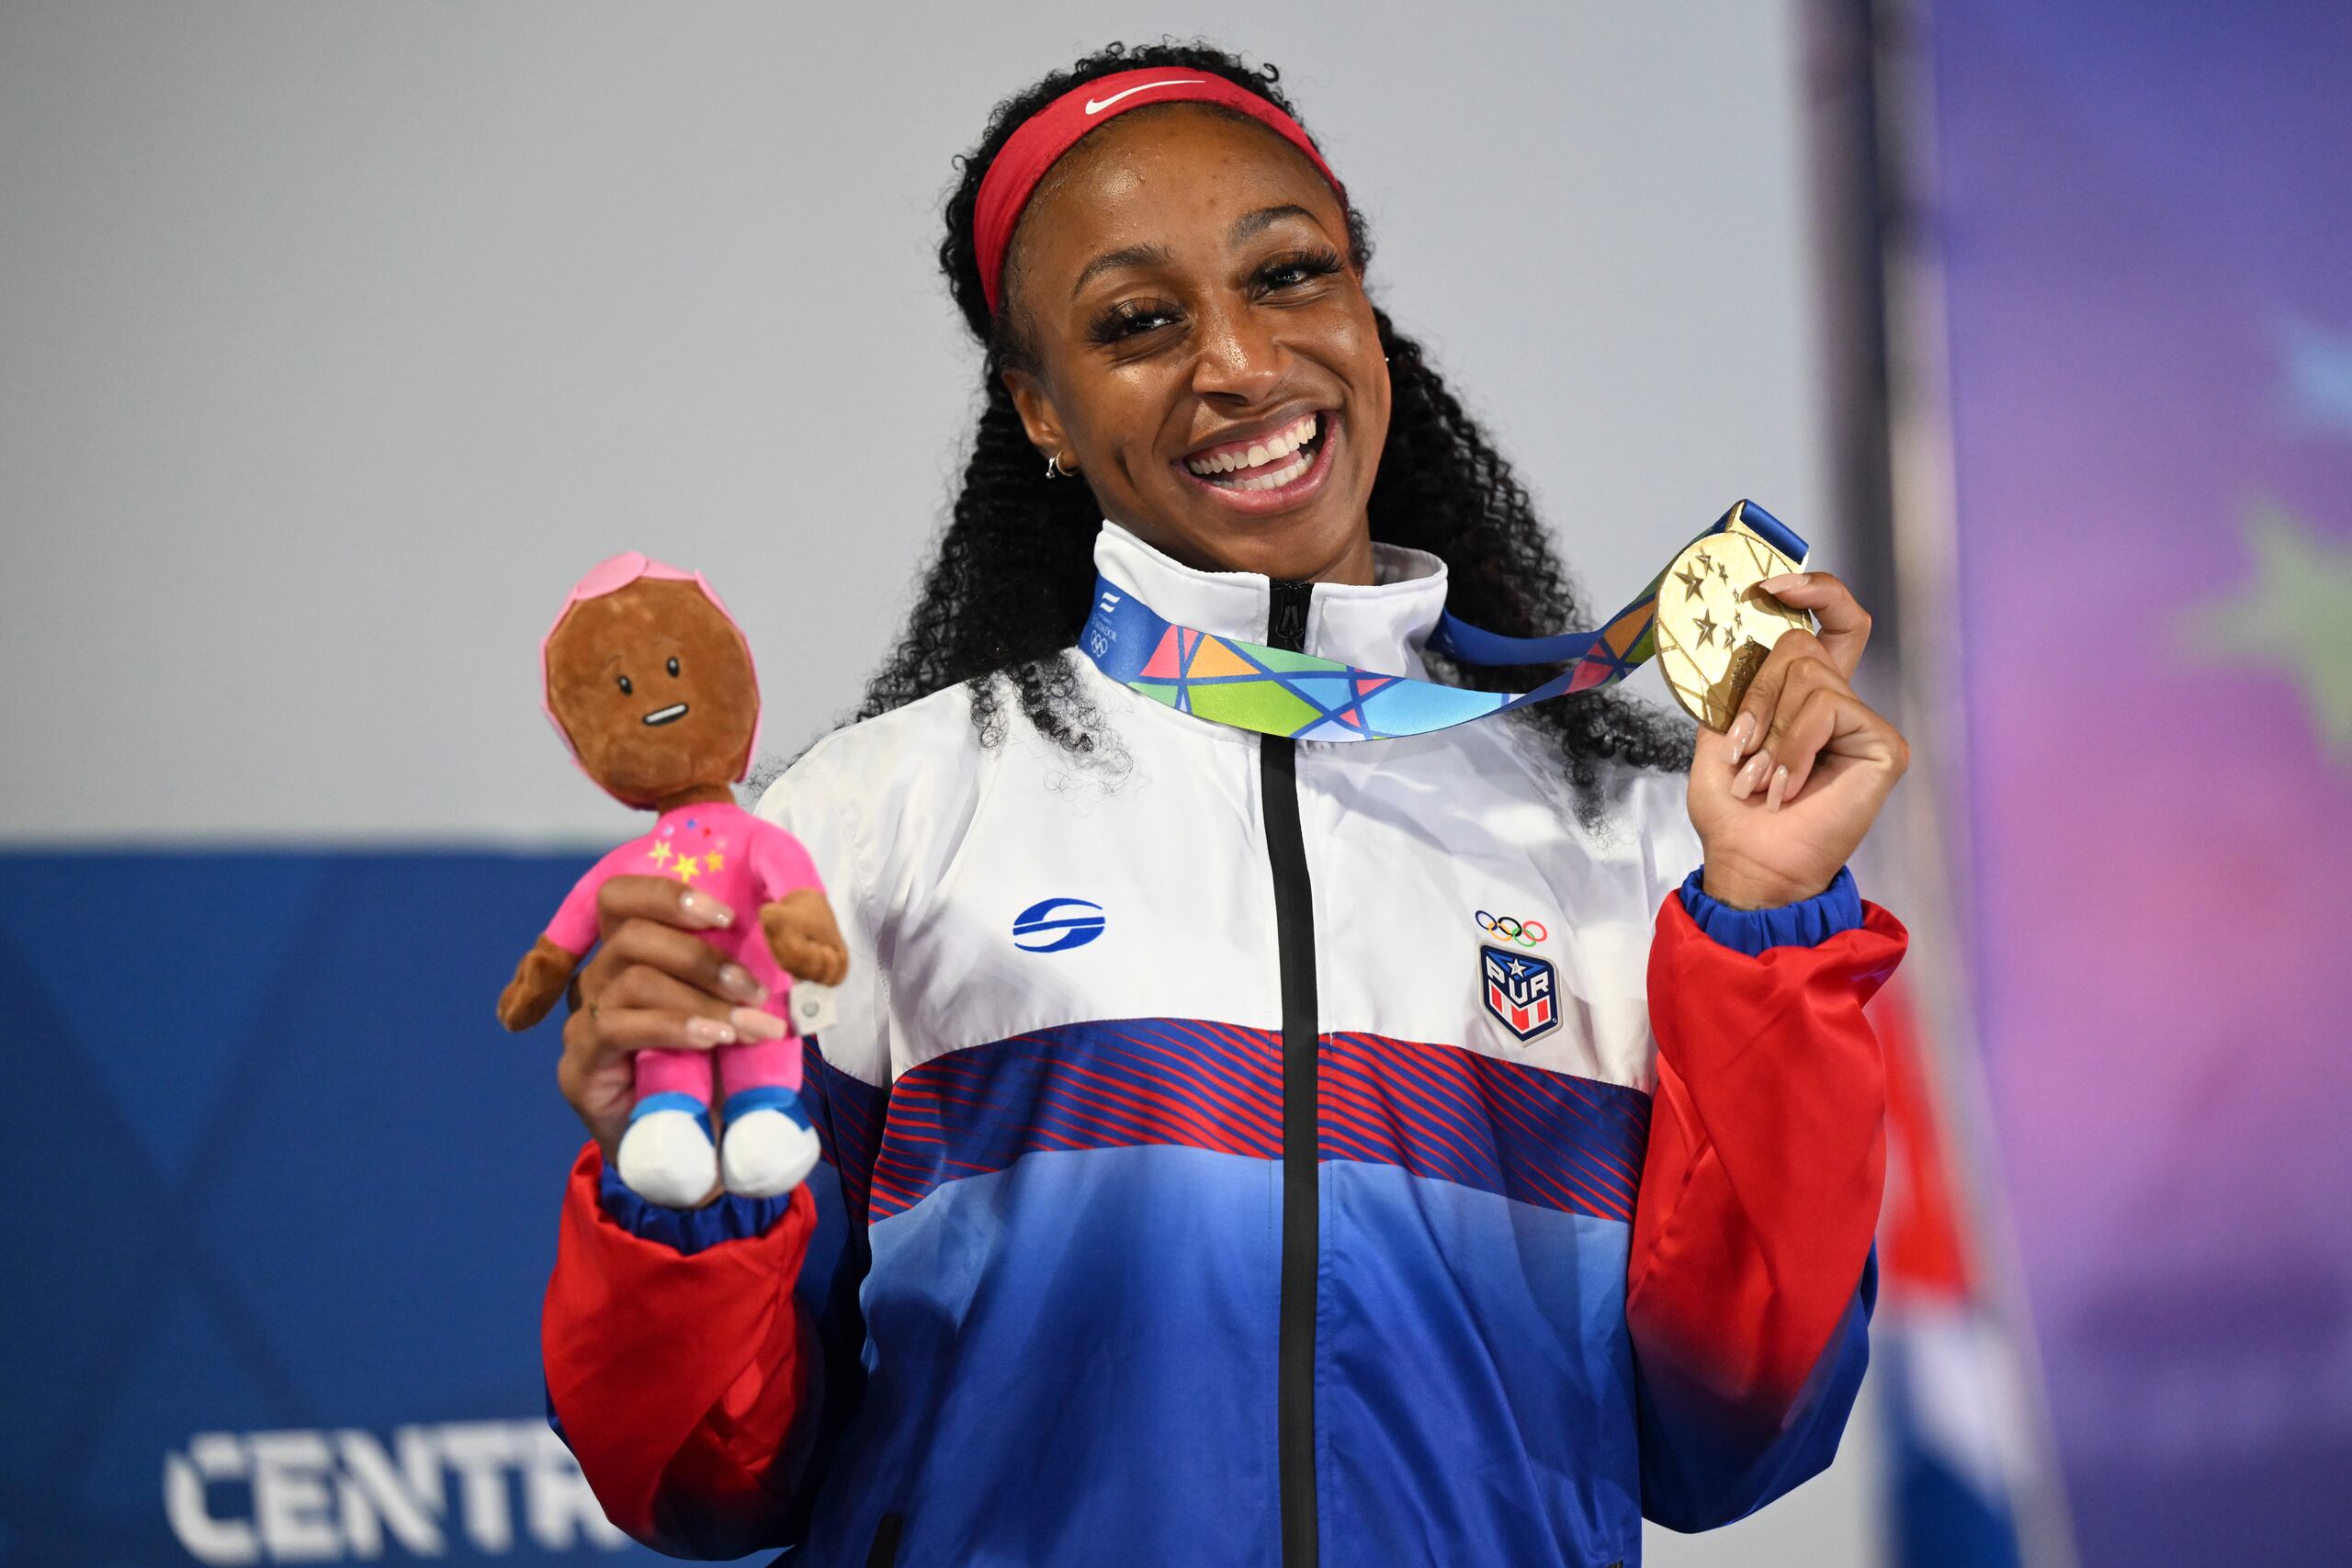 Jasmine Camacho Quinn ganó el oro en la carrera de 100 metros con vallas e impuso un récord de 12.60 segundos durante la semifinal.